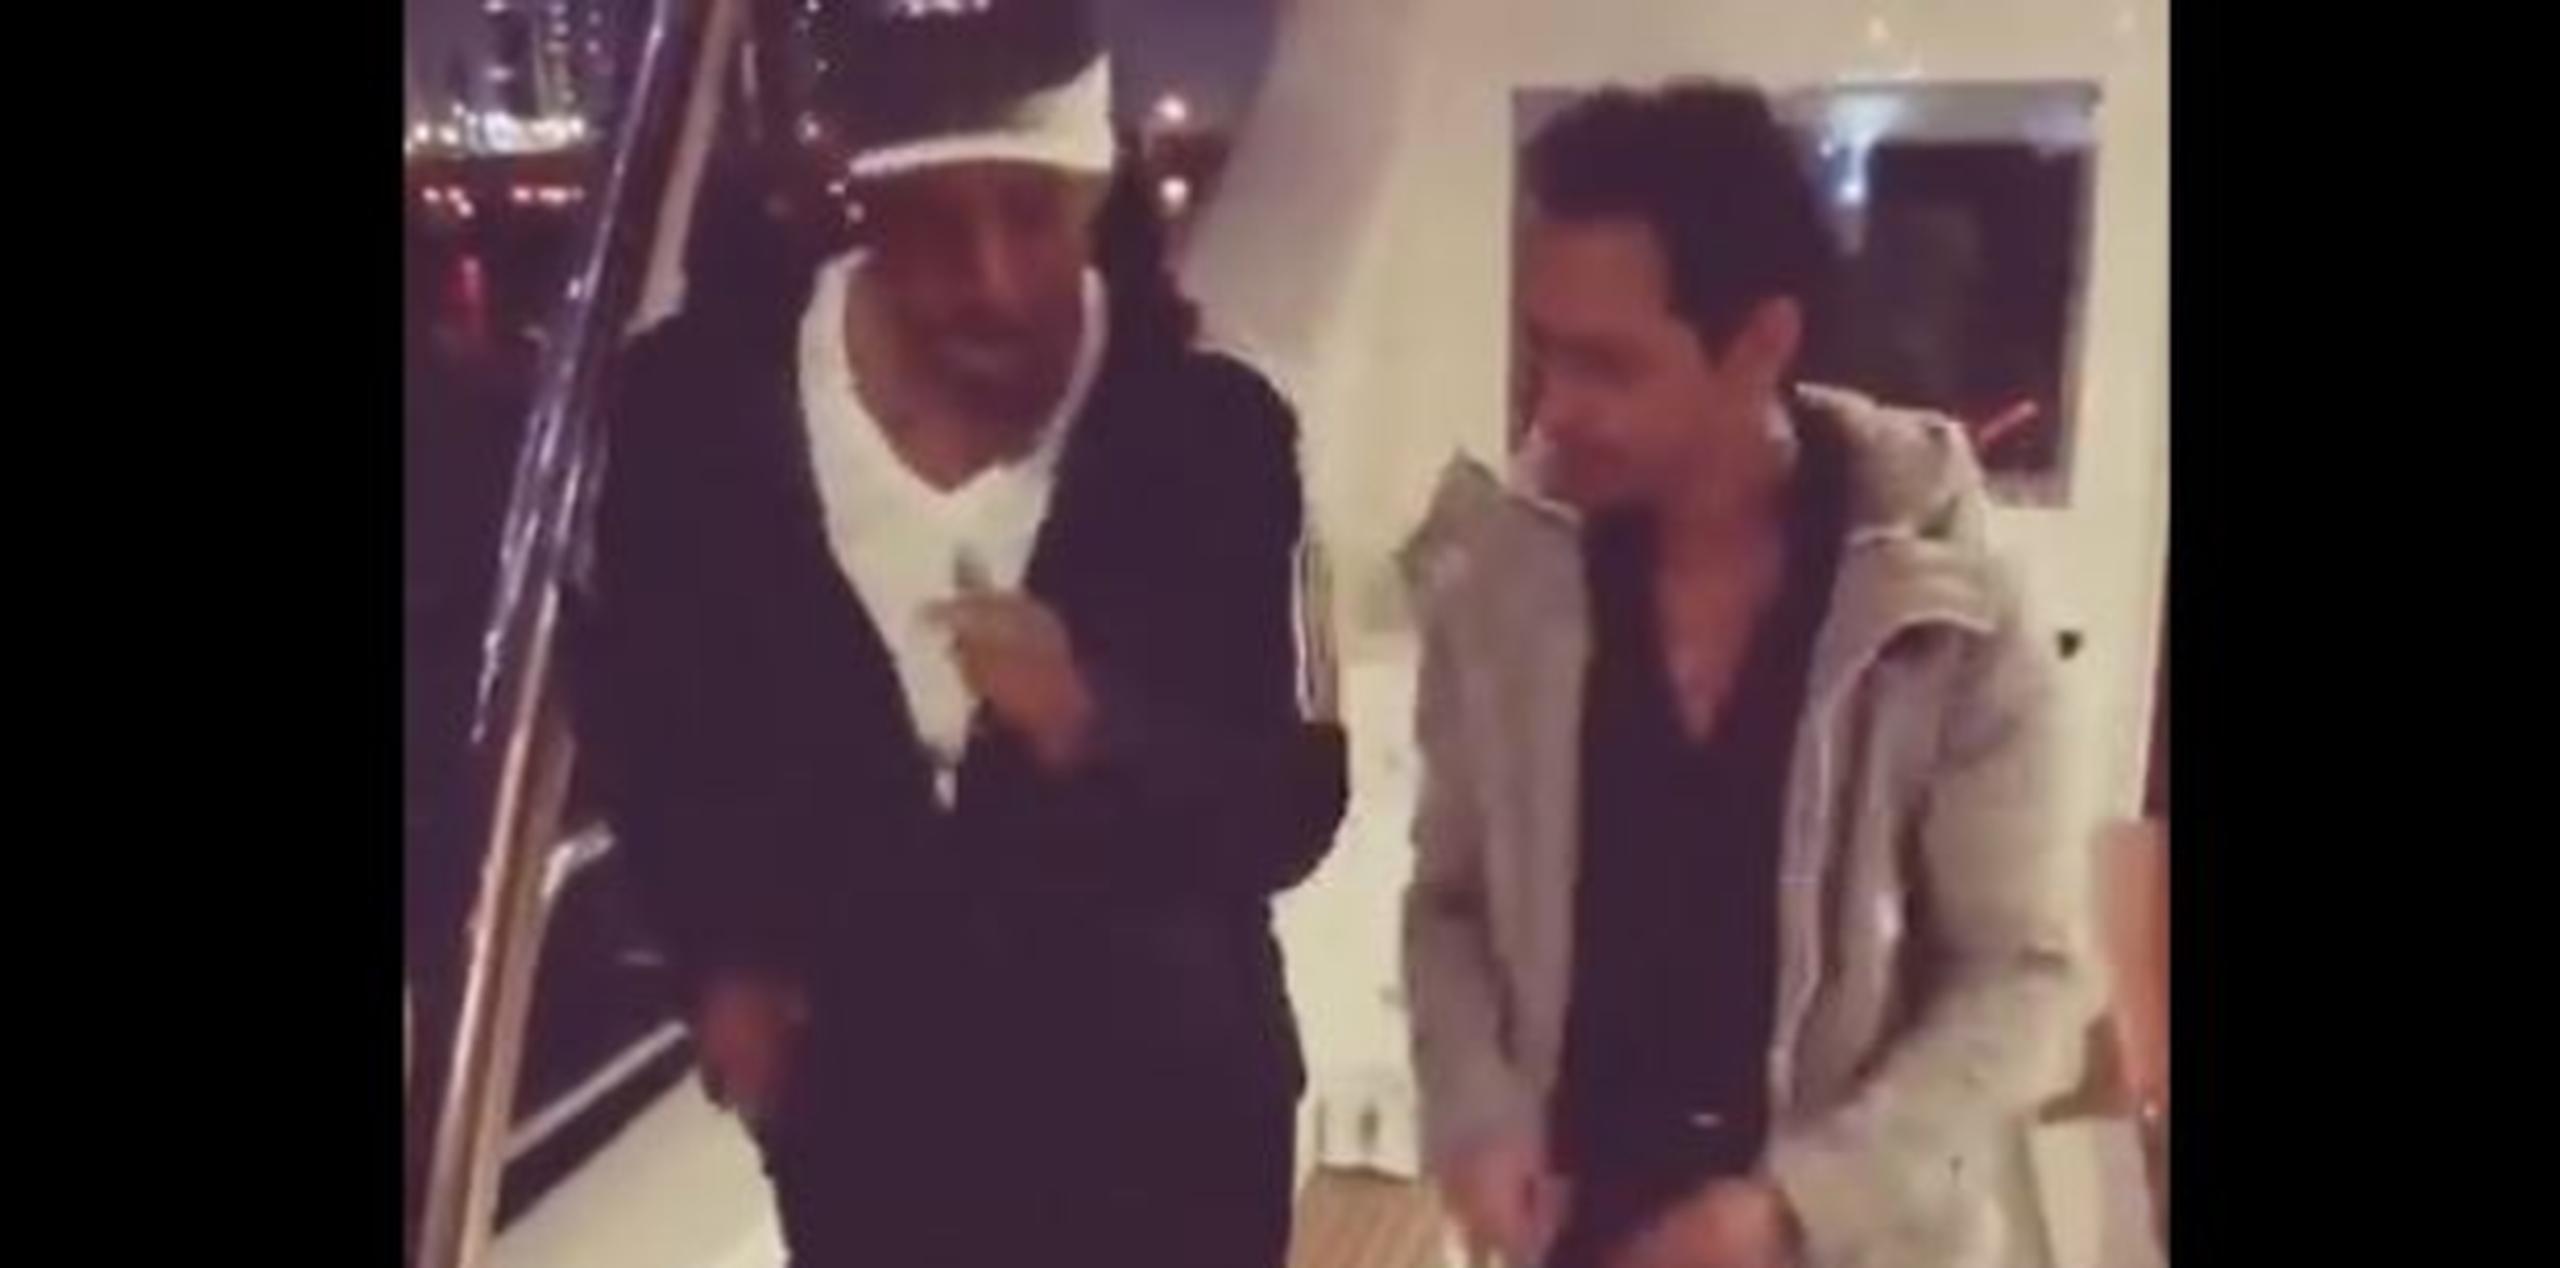 "#Bucketlist- Clases de salsa con Marc Anthony...", leía el post. (Captura)